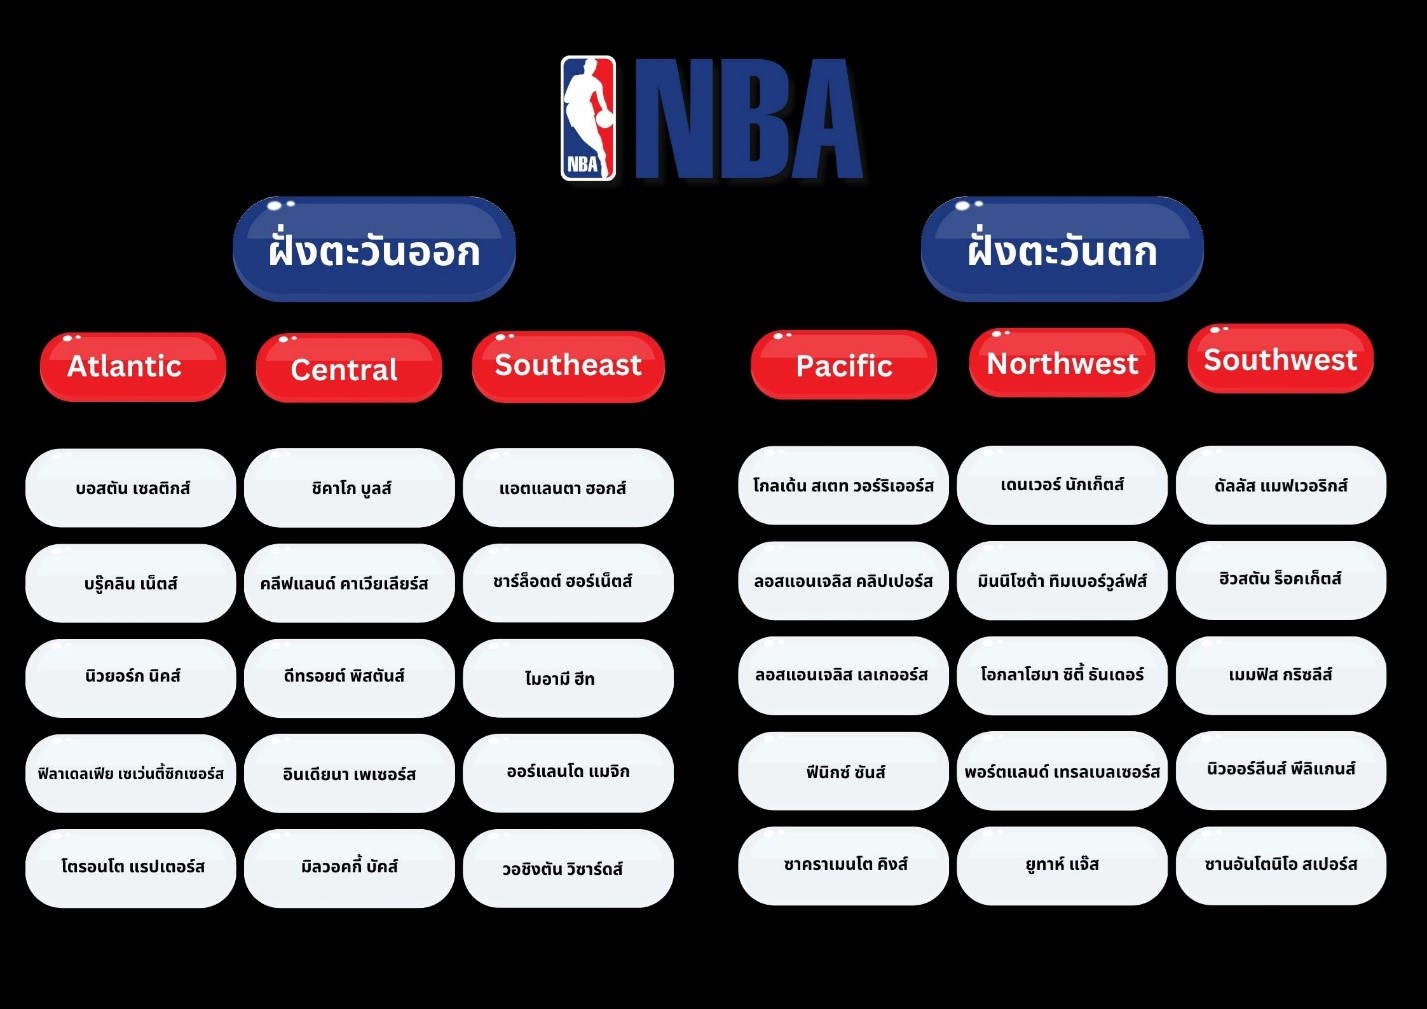 บาส NBA - เจาะลึกทีมต่างๆ มีทีมอะไรบ้าง การแบ่งโซนต่างๆ